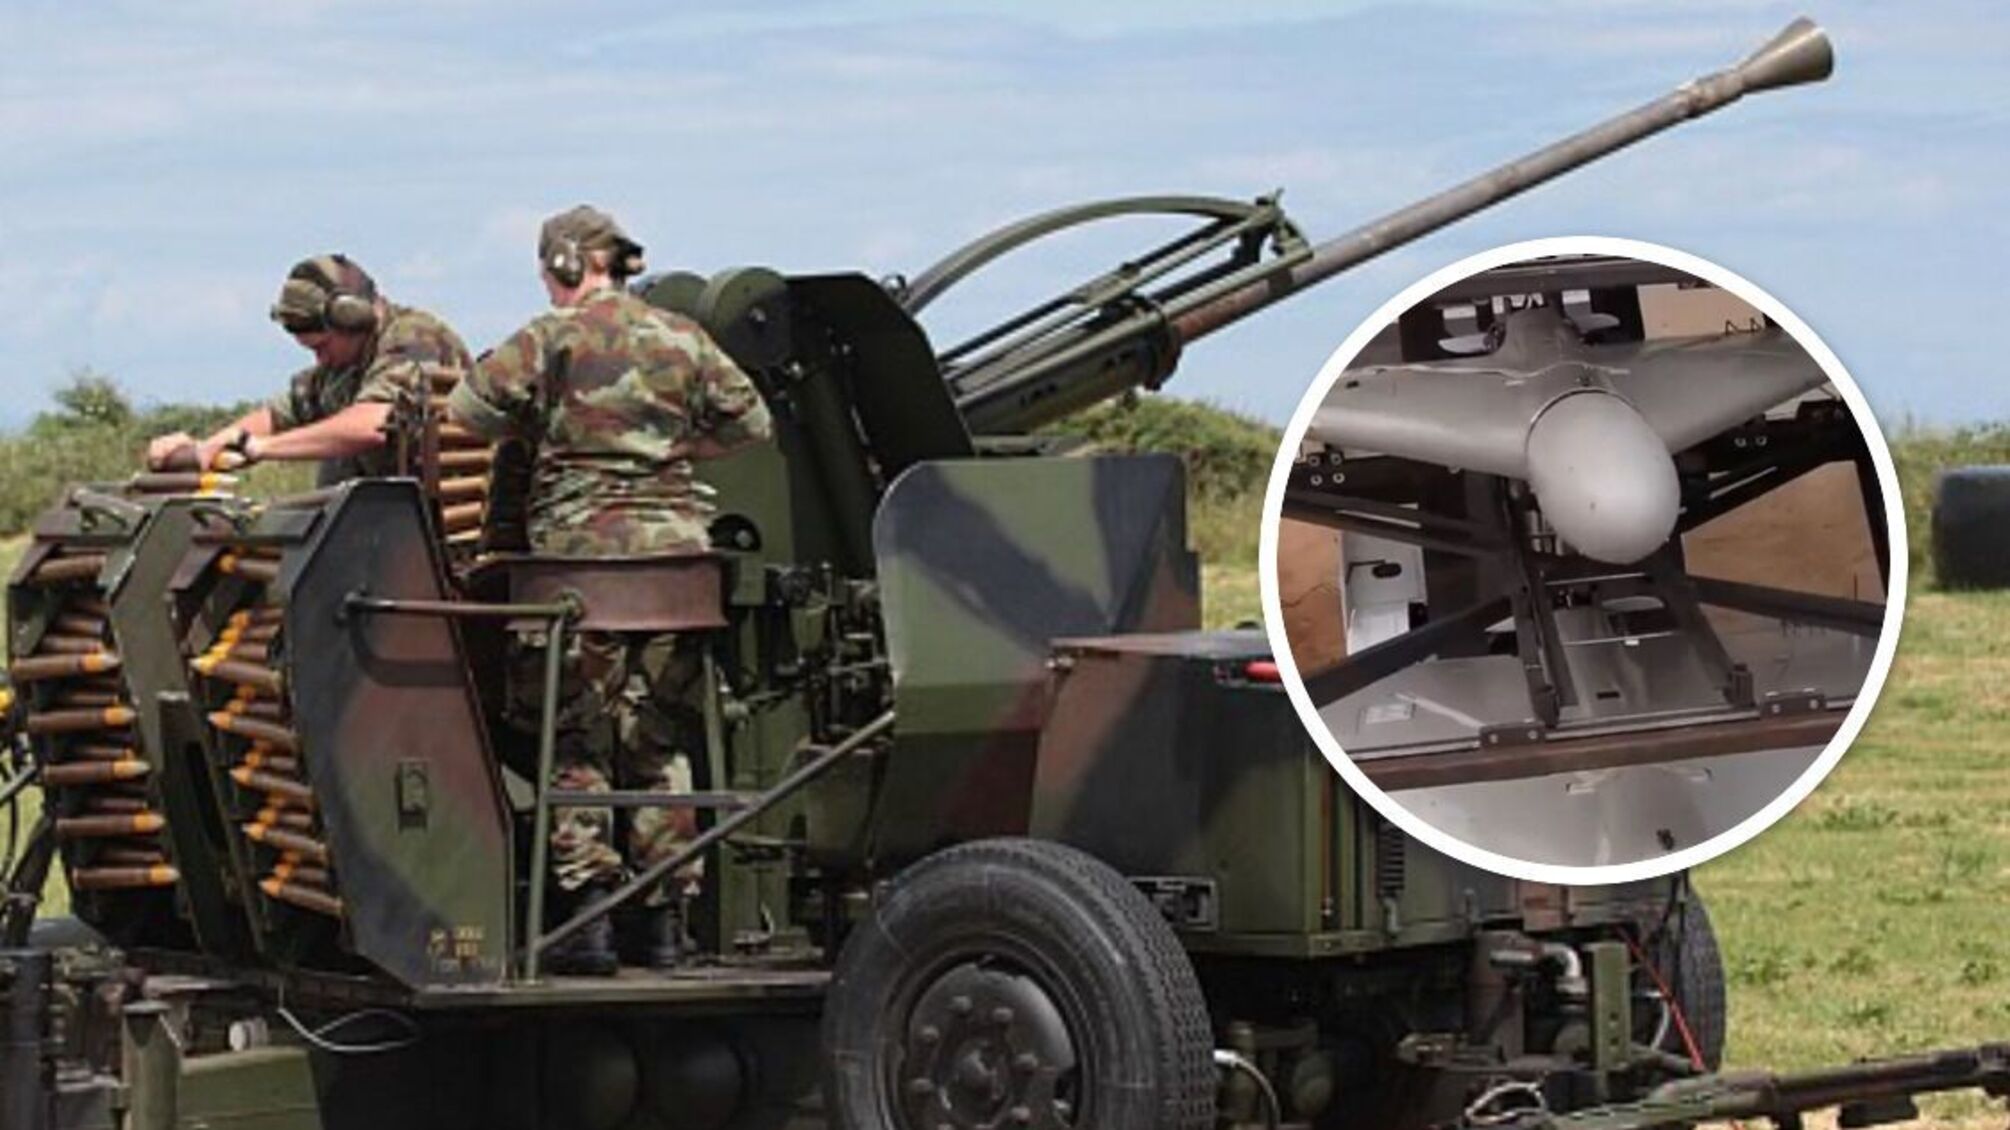 Зенитные установки Bofors L70 для борьбы против 'Шахидов': новое оружие от Литвы - детали